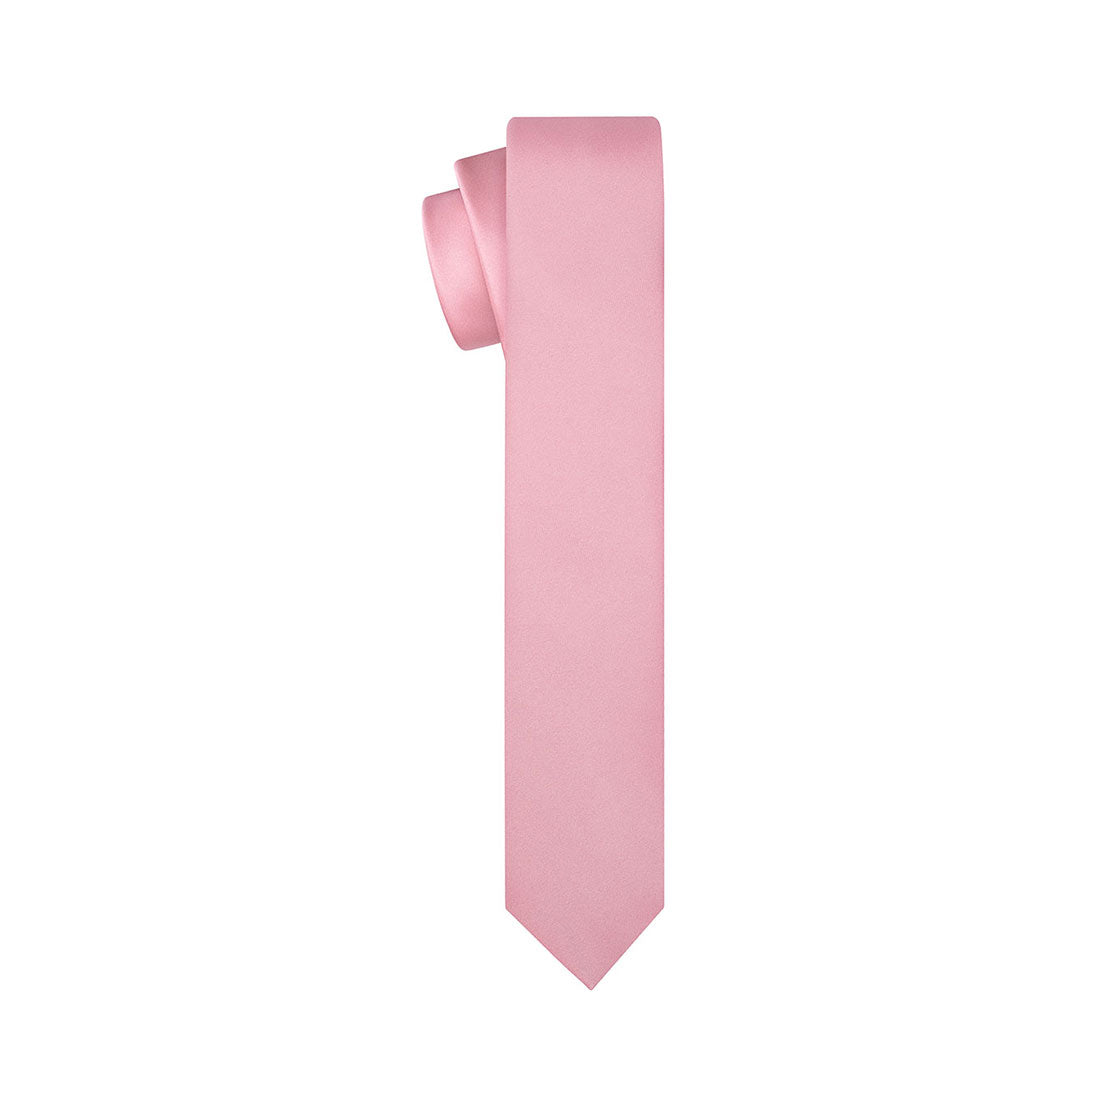 Rosy Pink Satin Tie - Tie, bowtie, pocket square  | Kissties